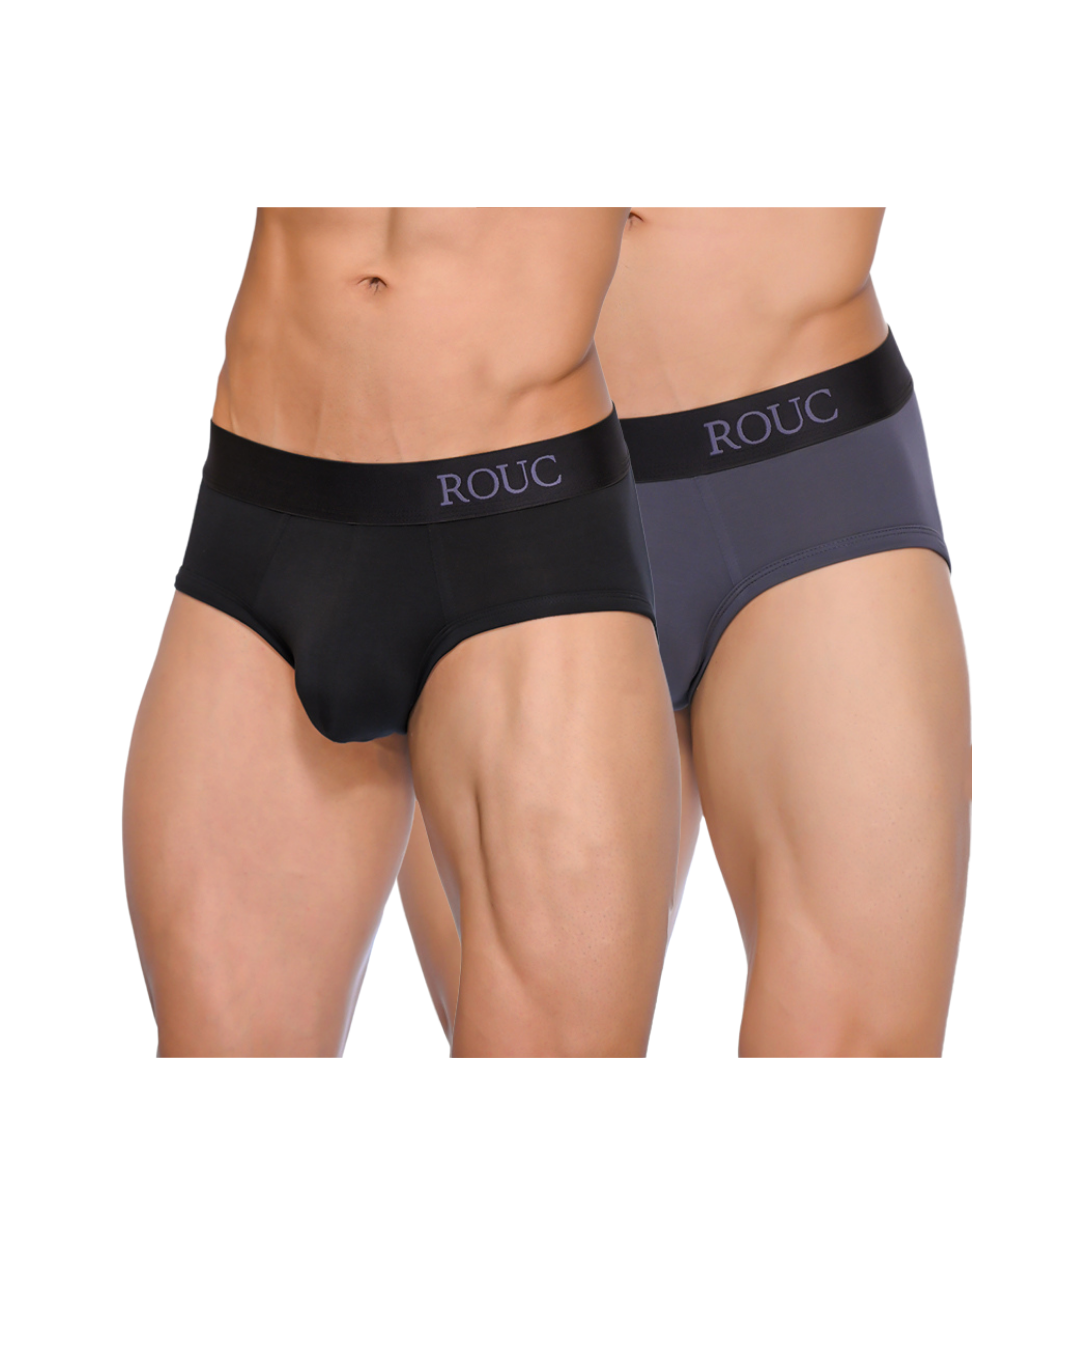 Men Underwear - BRIEFS - 2 Pack (Black & Grey)